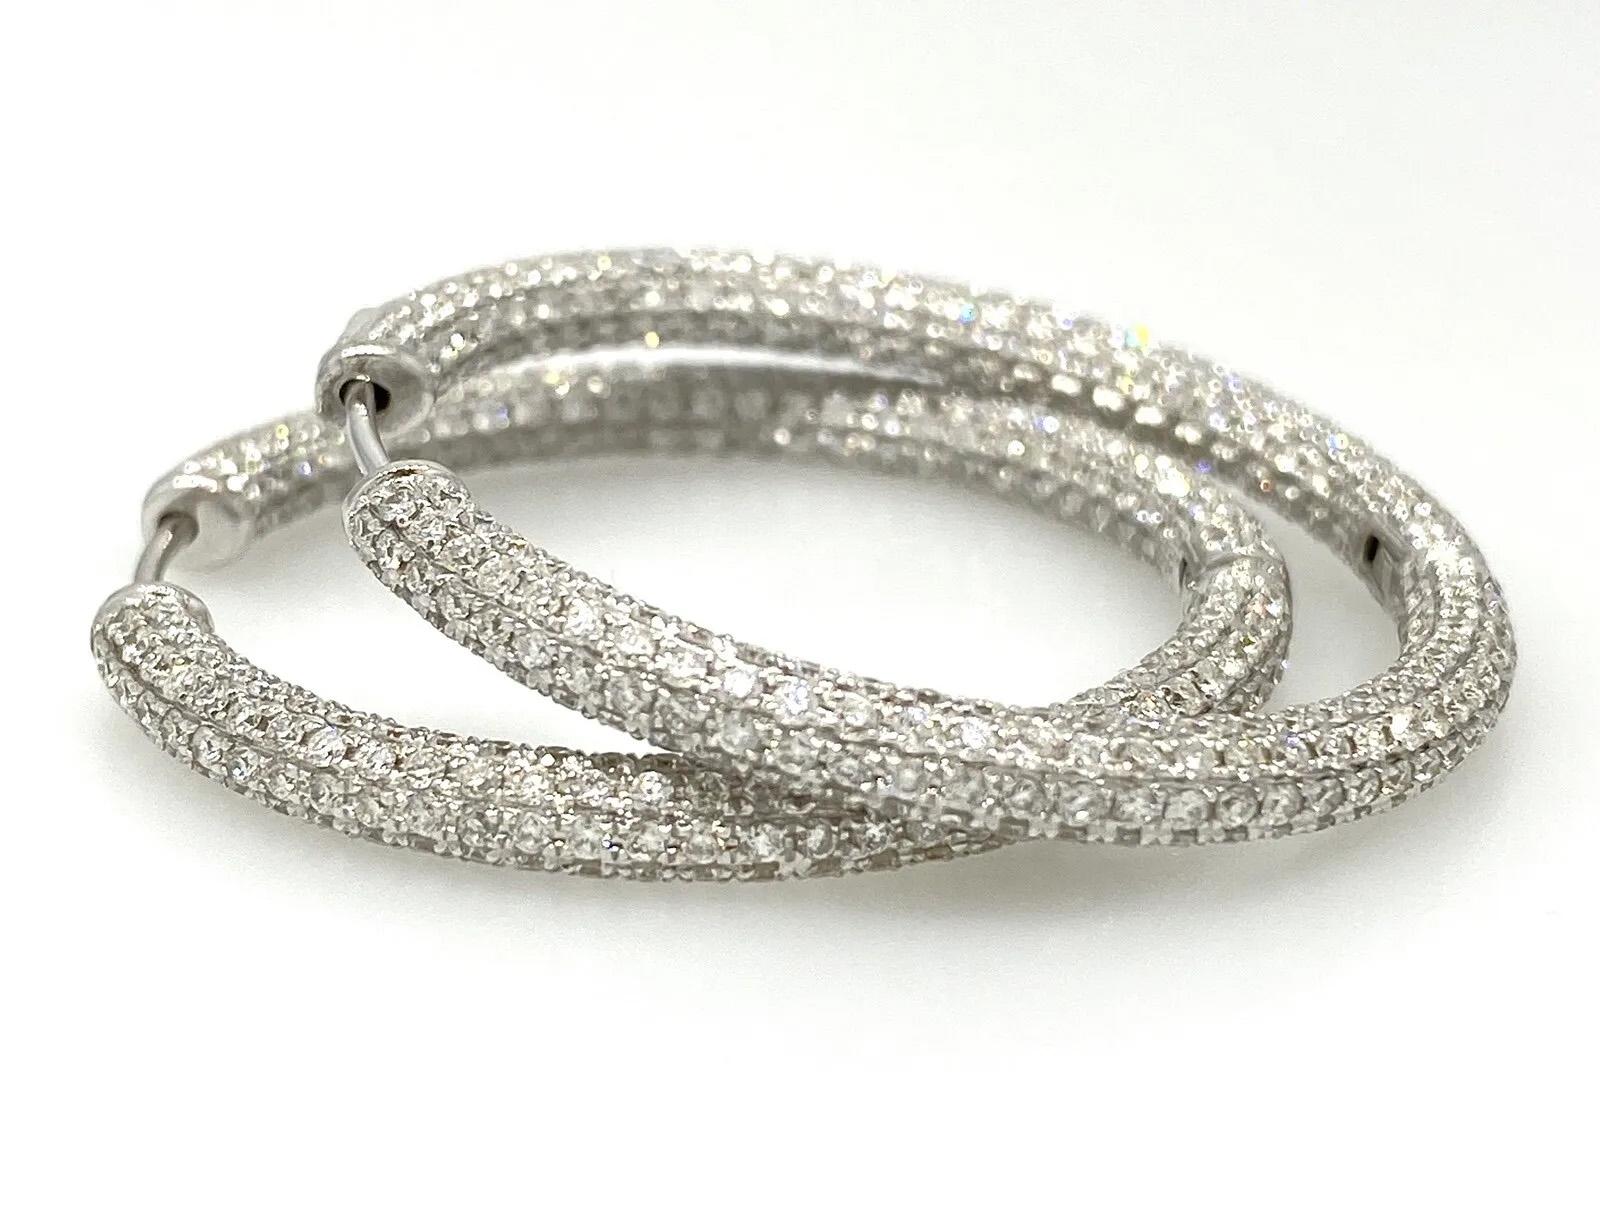 Runde Pavé-Diamant-Ohrringe 5,04 Karat Gesamtgewicht in 18k Weißgold

Diamond Hoop Earrings verfügen über runde Creolen, die mit 5,04 Karat runden Diamanten im Vollschliff in 18 Karat Weißgold gepavét sind.

Die Ohrringe sind 1,35